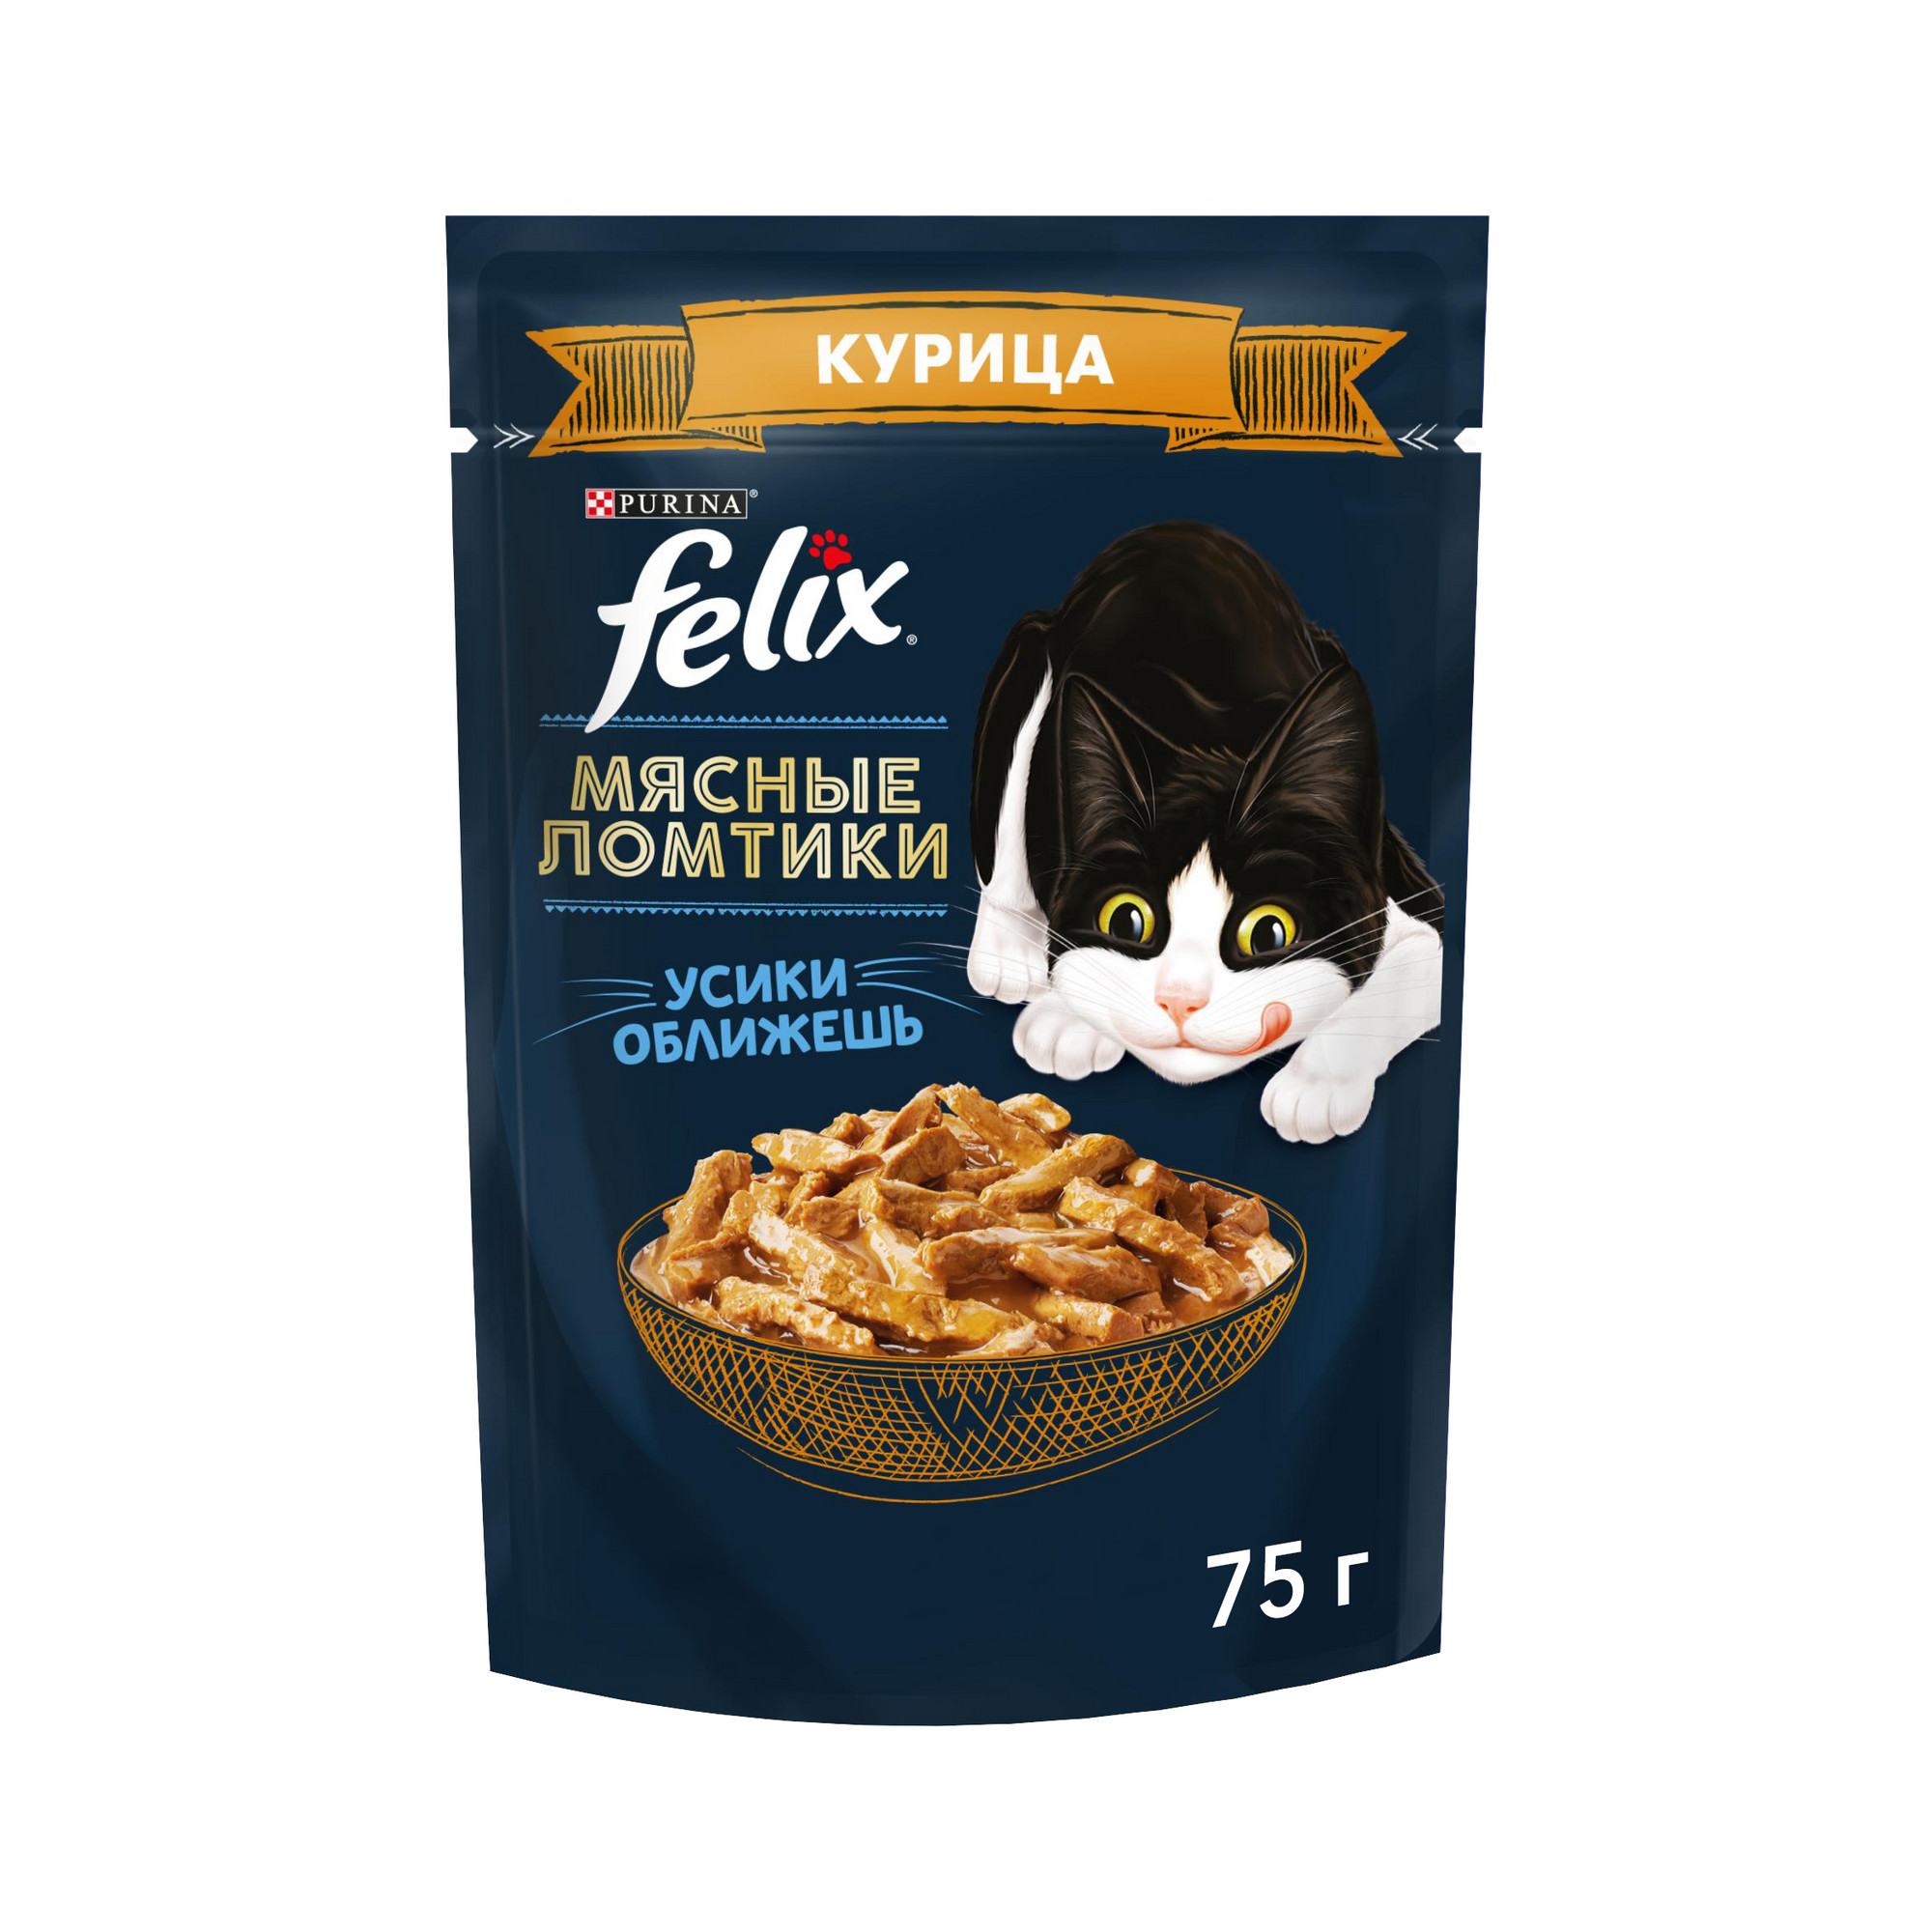 Купить влажный корм для кошек Felix Мясные ломтики с курицей, 75 г, цены на Мегамаркет | Артикул: 100032809602